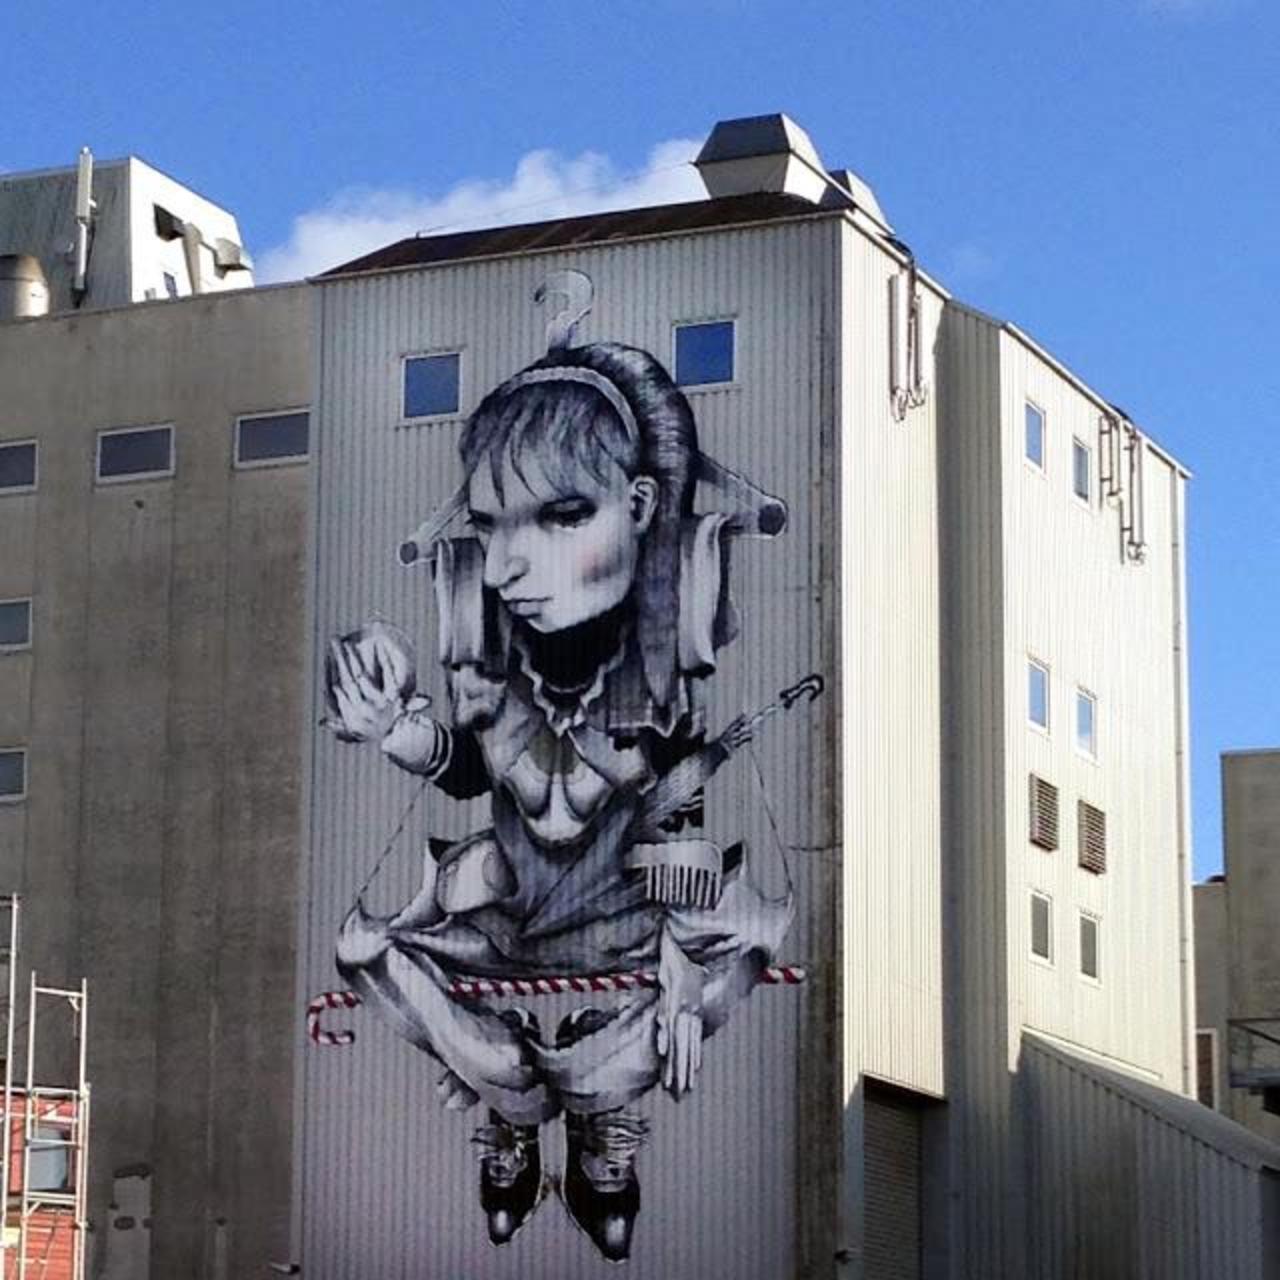 Ethos unveils a new mural in Bryne, Norway. #StreetArt #Graffiti #Mural http://t.co/Y0EcYWQ2GA